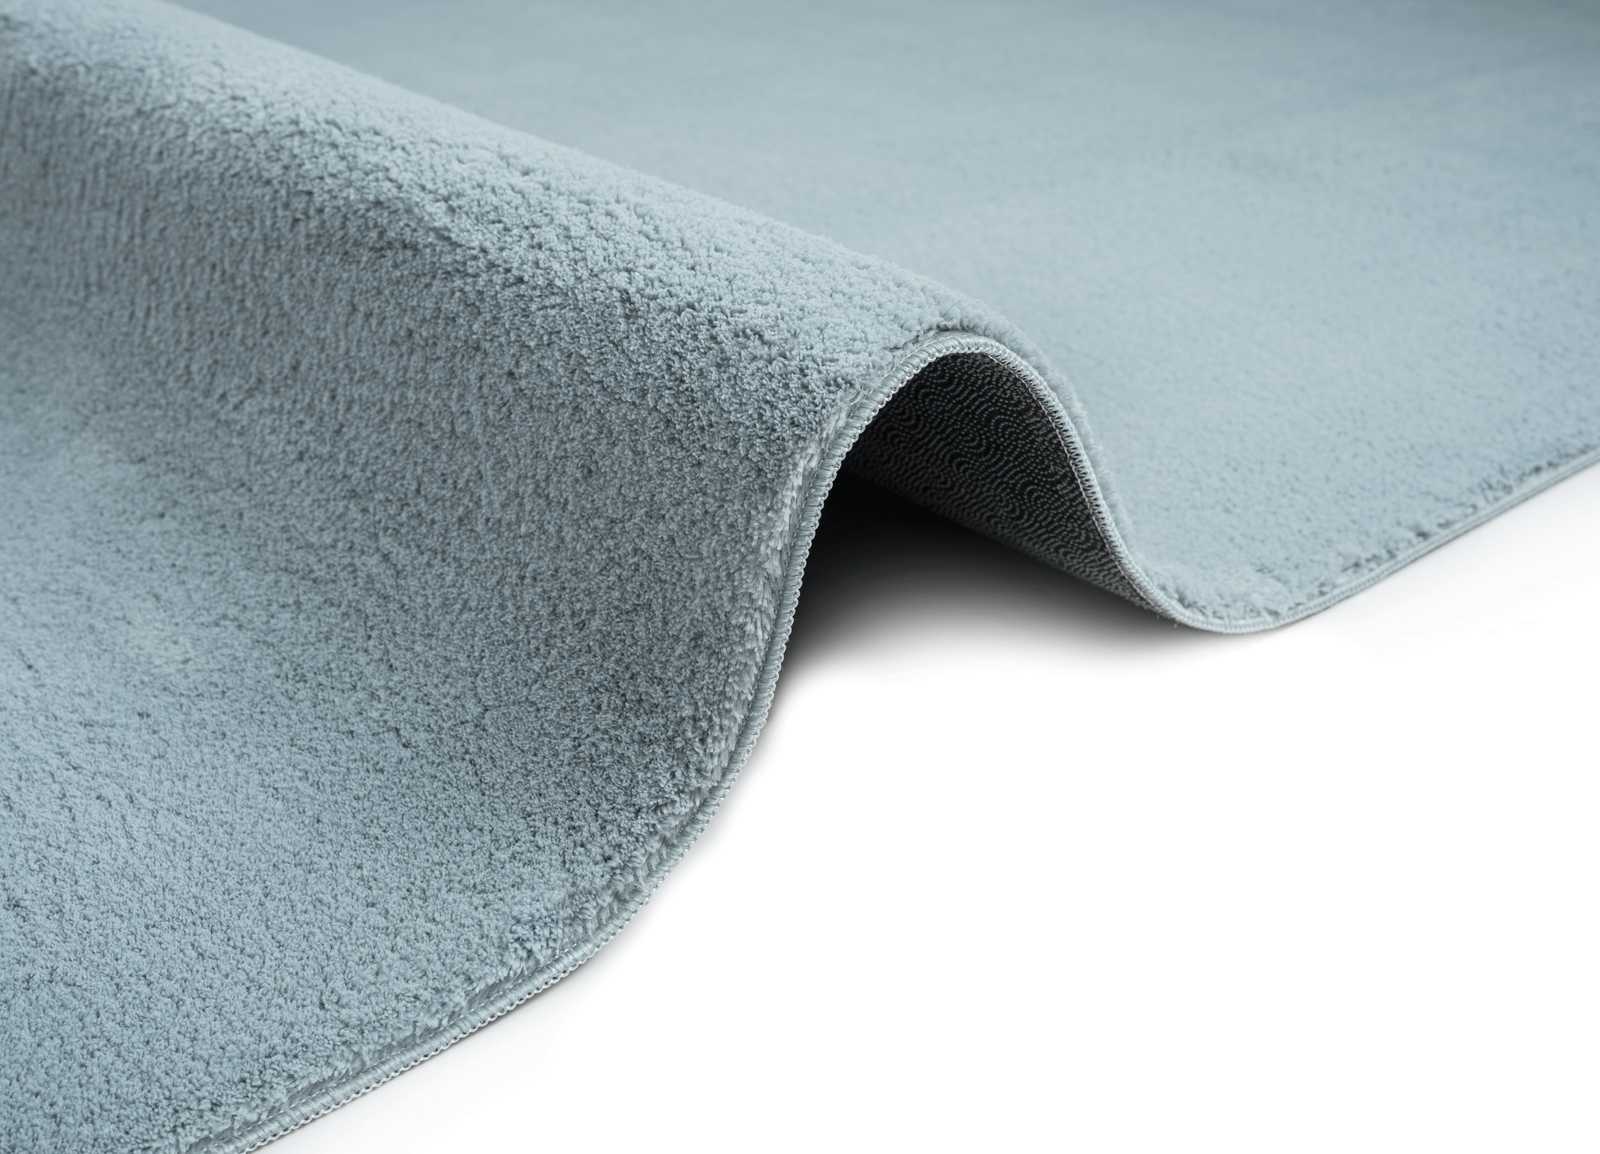             Flauschiger Hochflor Teppich in Blau – 200 x 140 cm
        